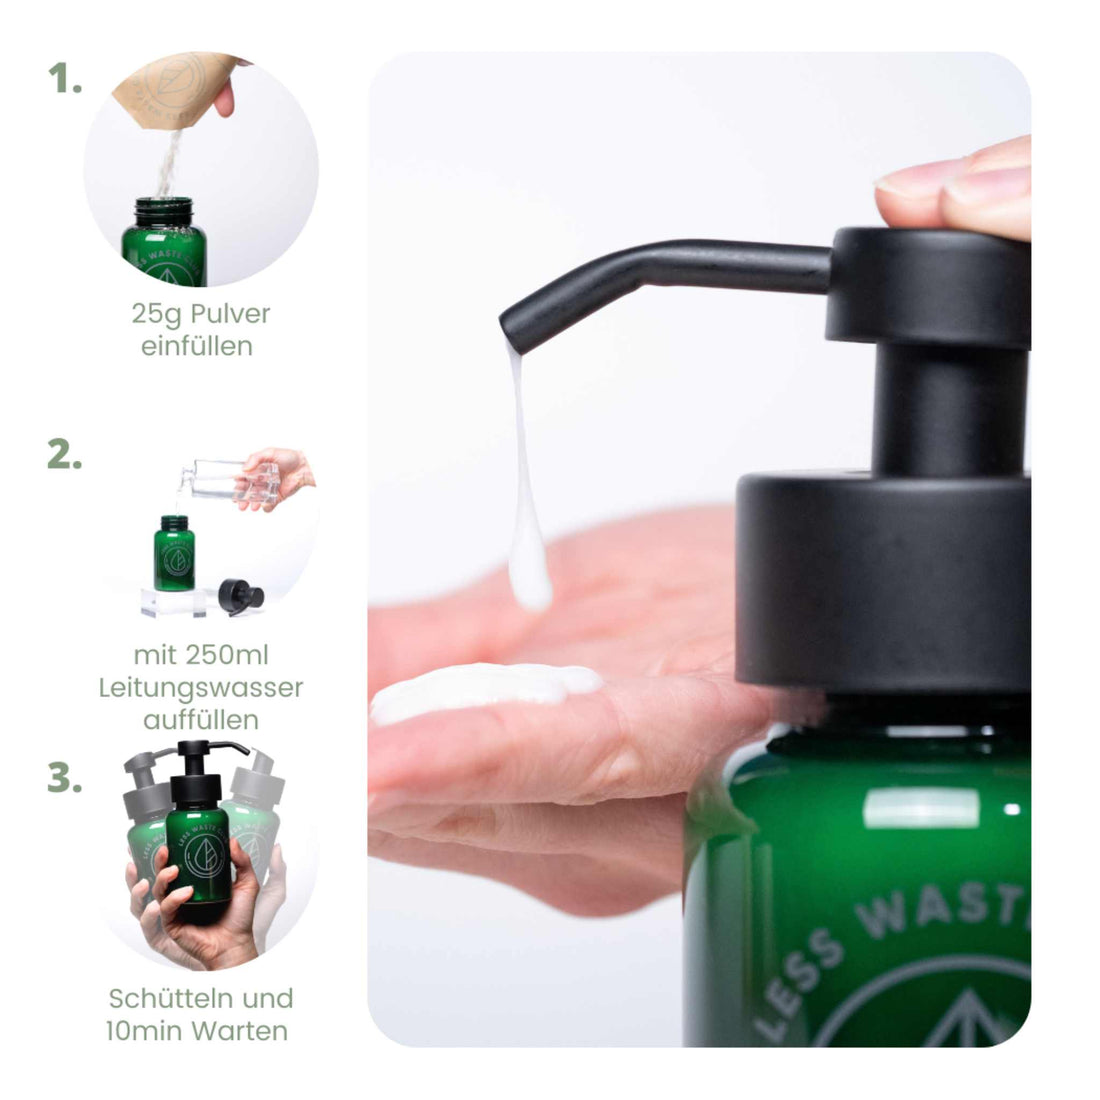 Shampoo Pulver - Starter Set